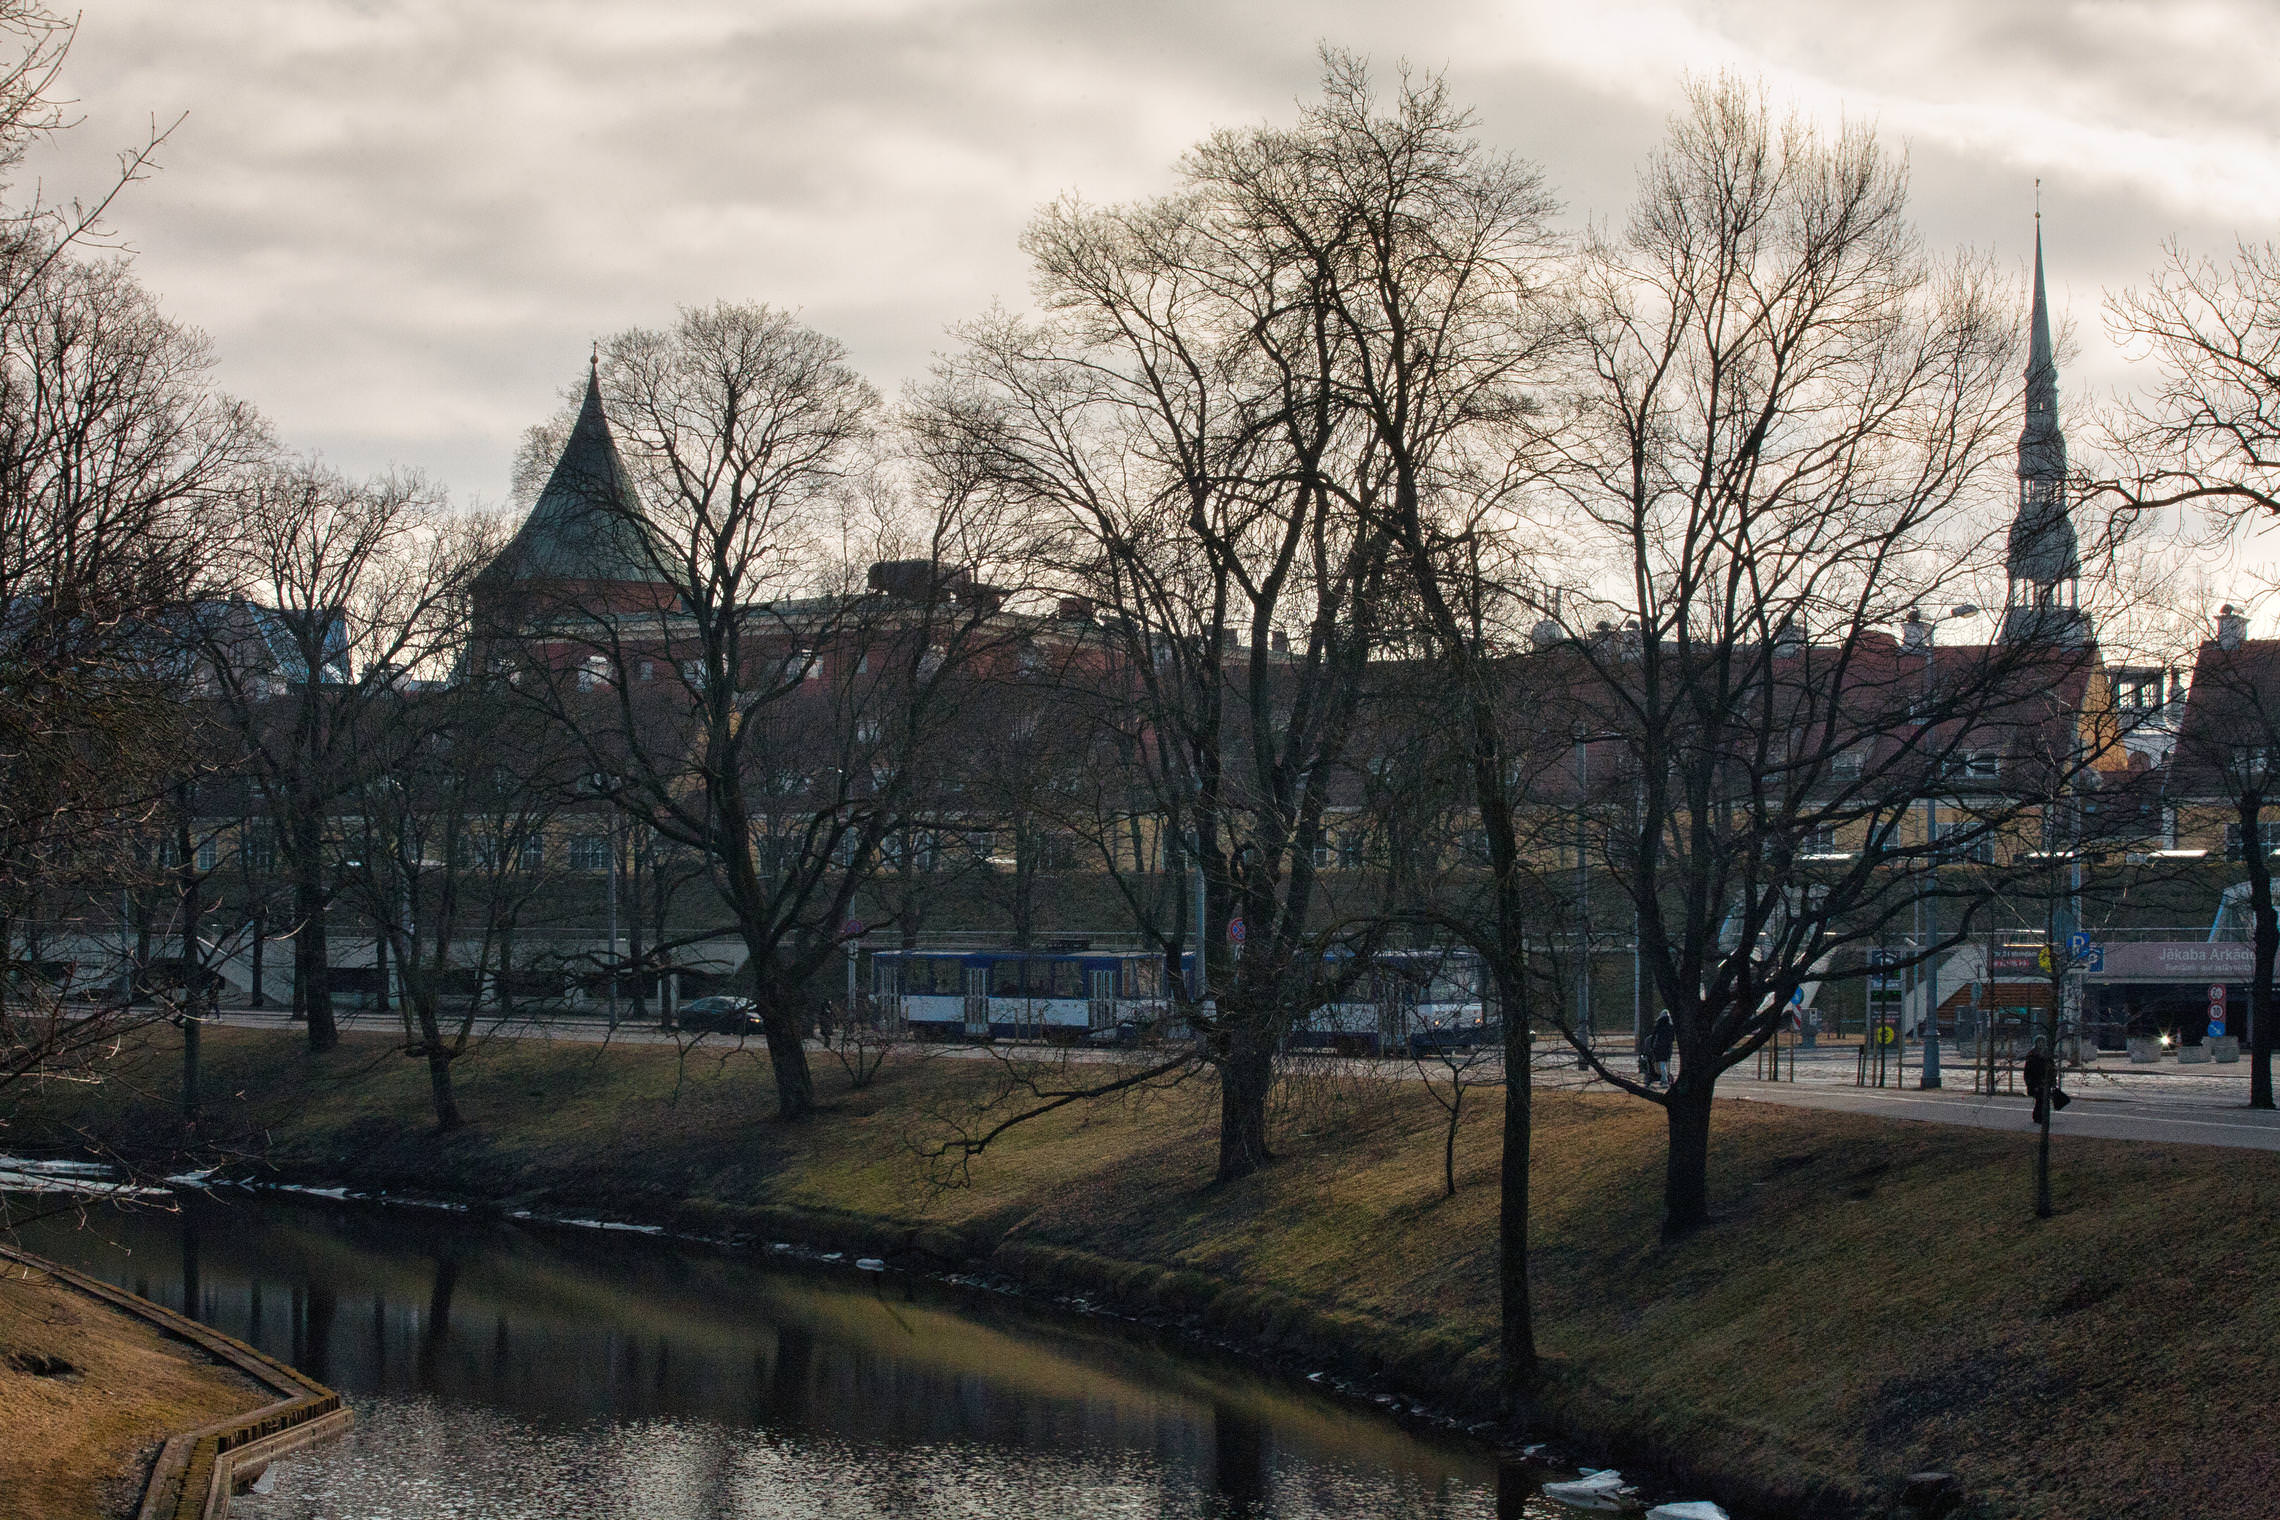 Riga in springtime